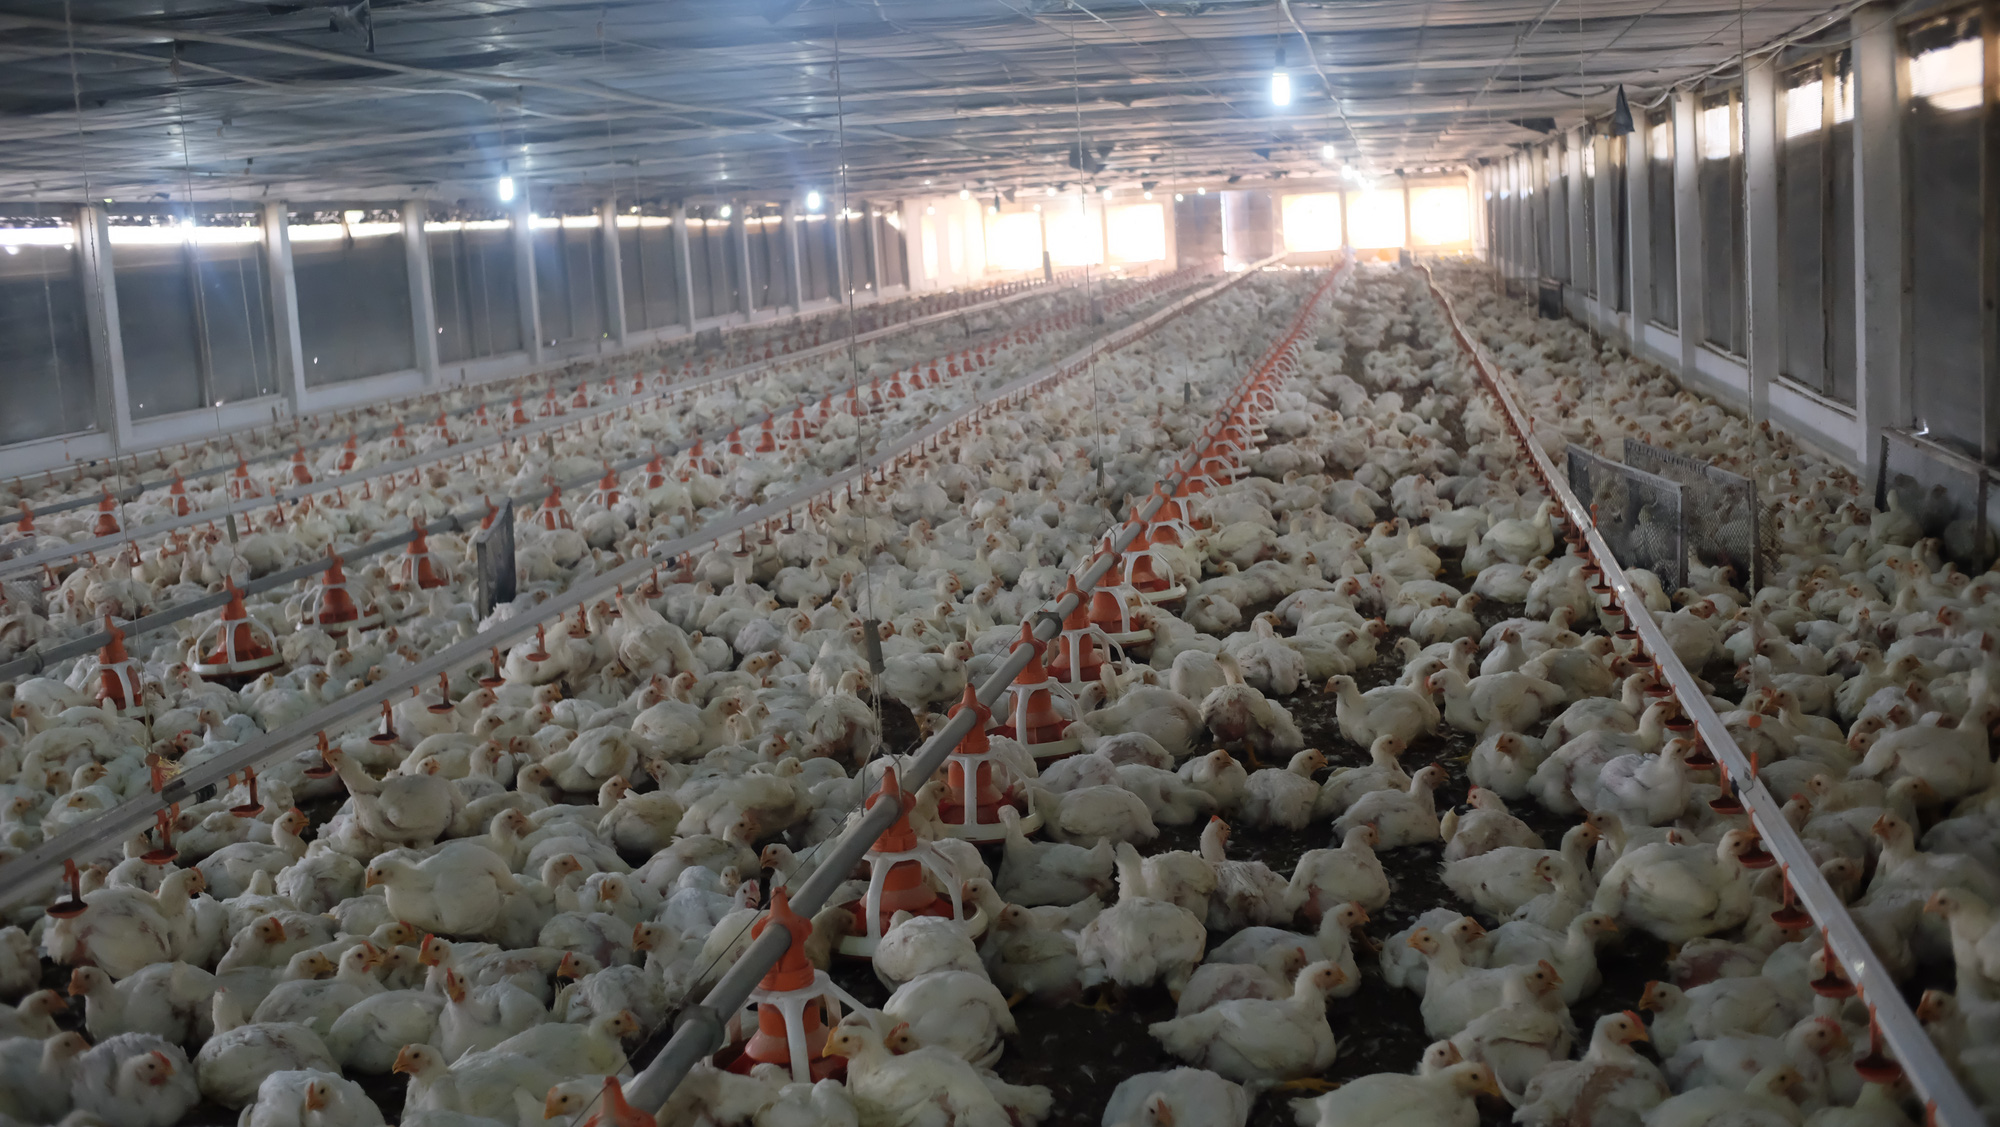 Tập đoàn De Heus hợp tác cùng 7 tỉnh xây dựng chuỗi thịt gà an toàn dịch bệnh, đạt chuẩn quốc tế - Ảnh 4.